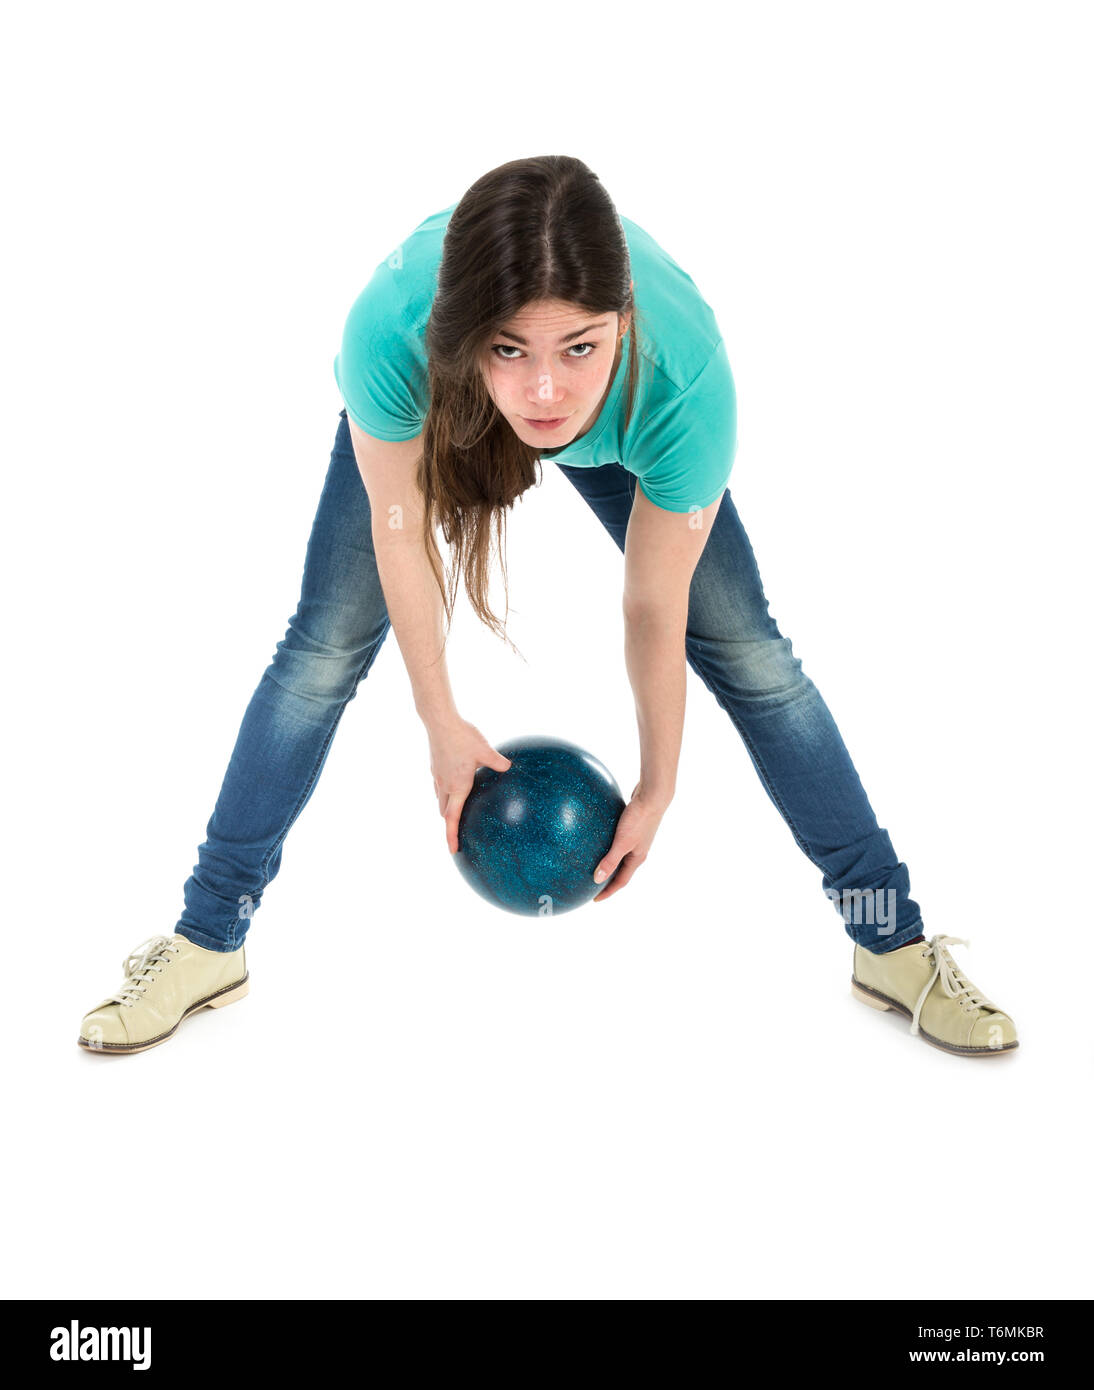 Кинуть шарик. Мяч для боулинга. Женщина бросает мяч. Рука в шаре для боулинга. Боулинг бросок шара.